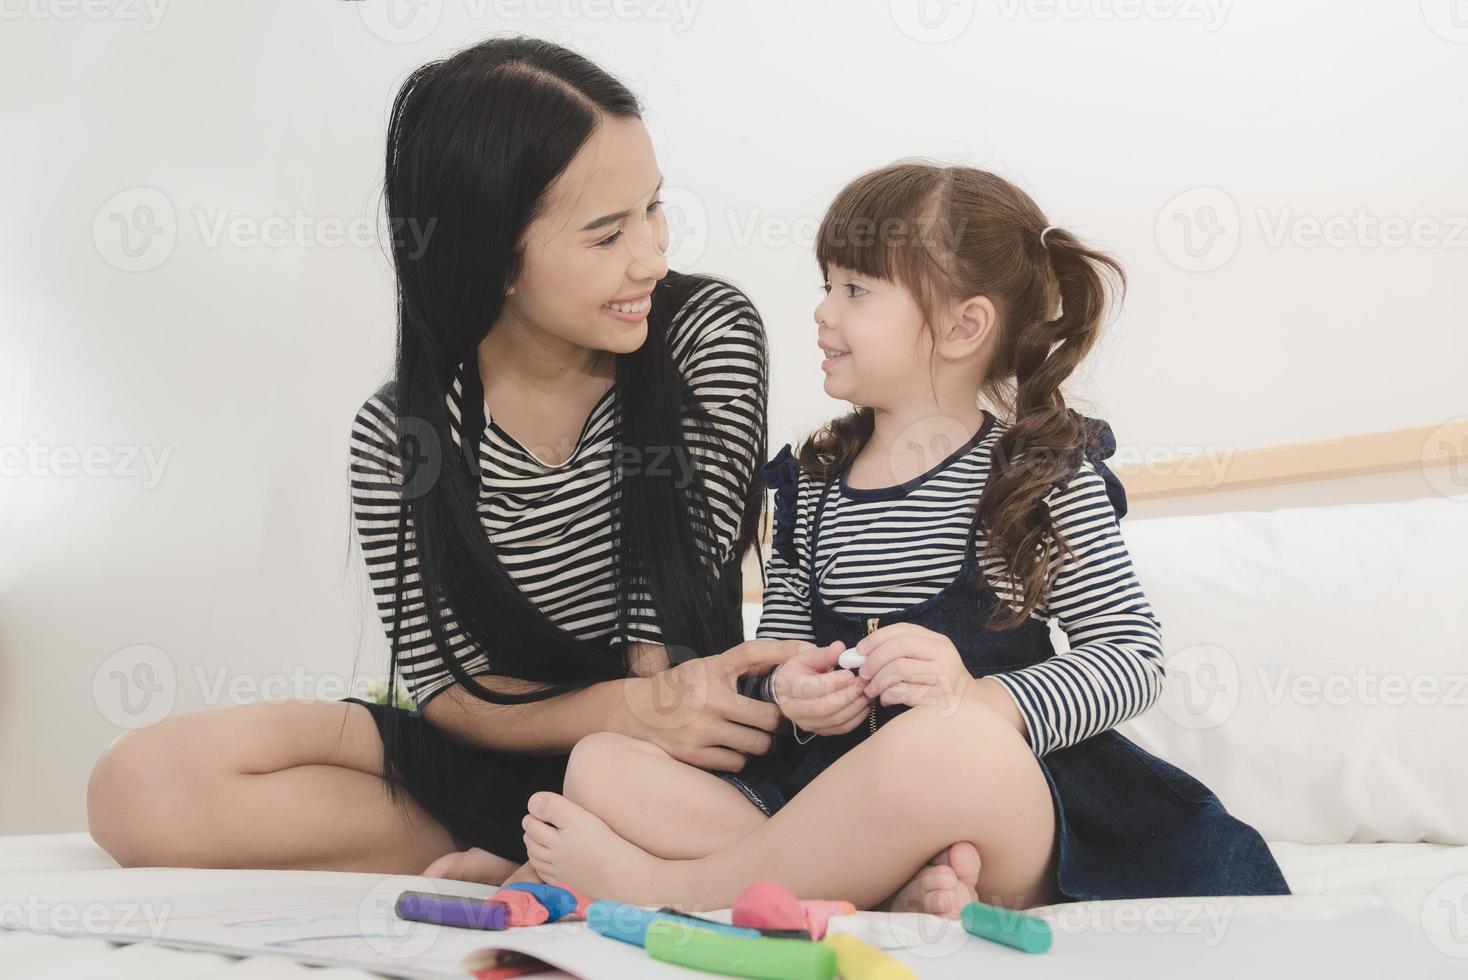 famille aimante heureuse, jeune mère asiatique jouant avec sa fille dans la chambre de l'enfant. conception de photos pour le concept de famille, d'enfants et de gens heureux.